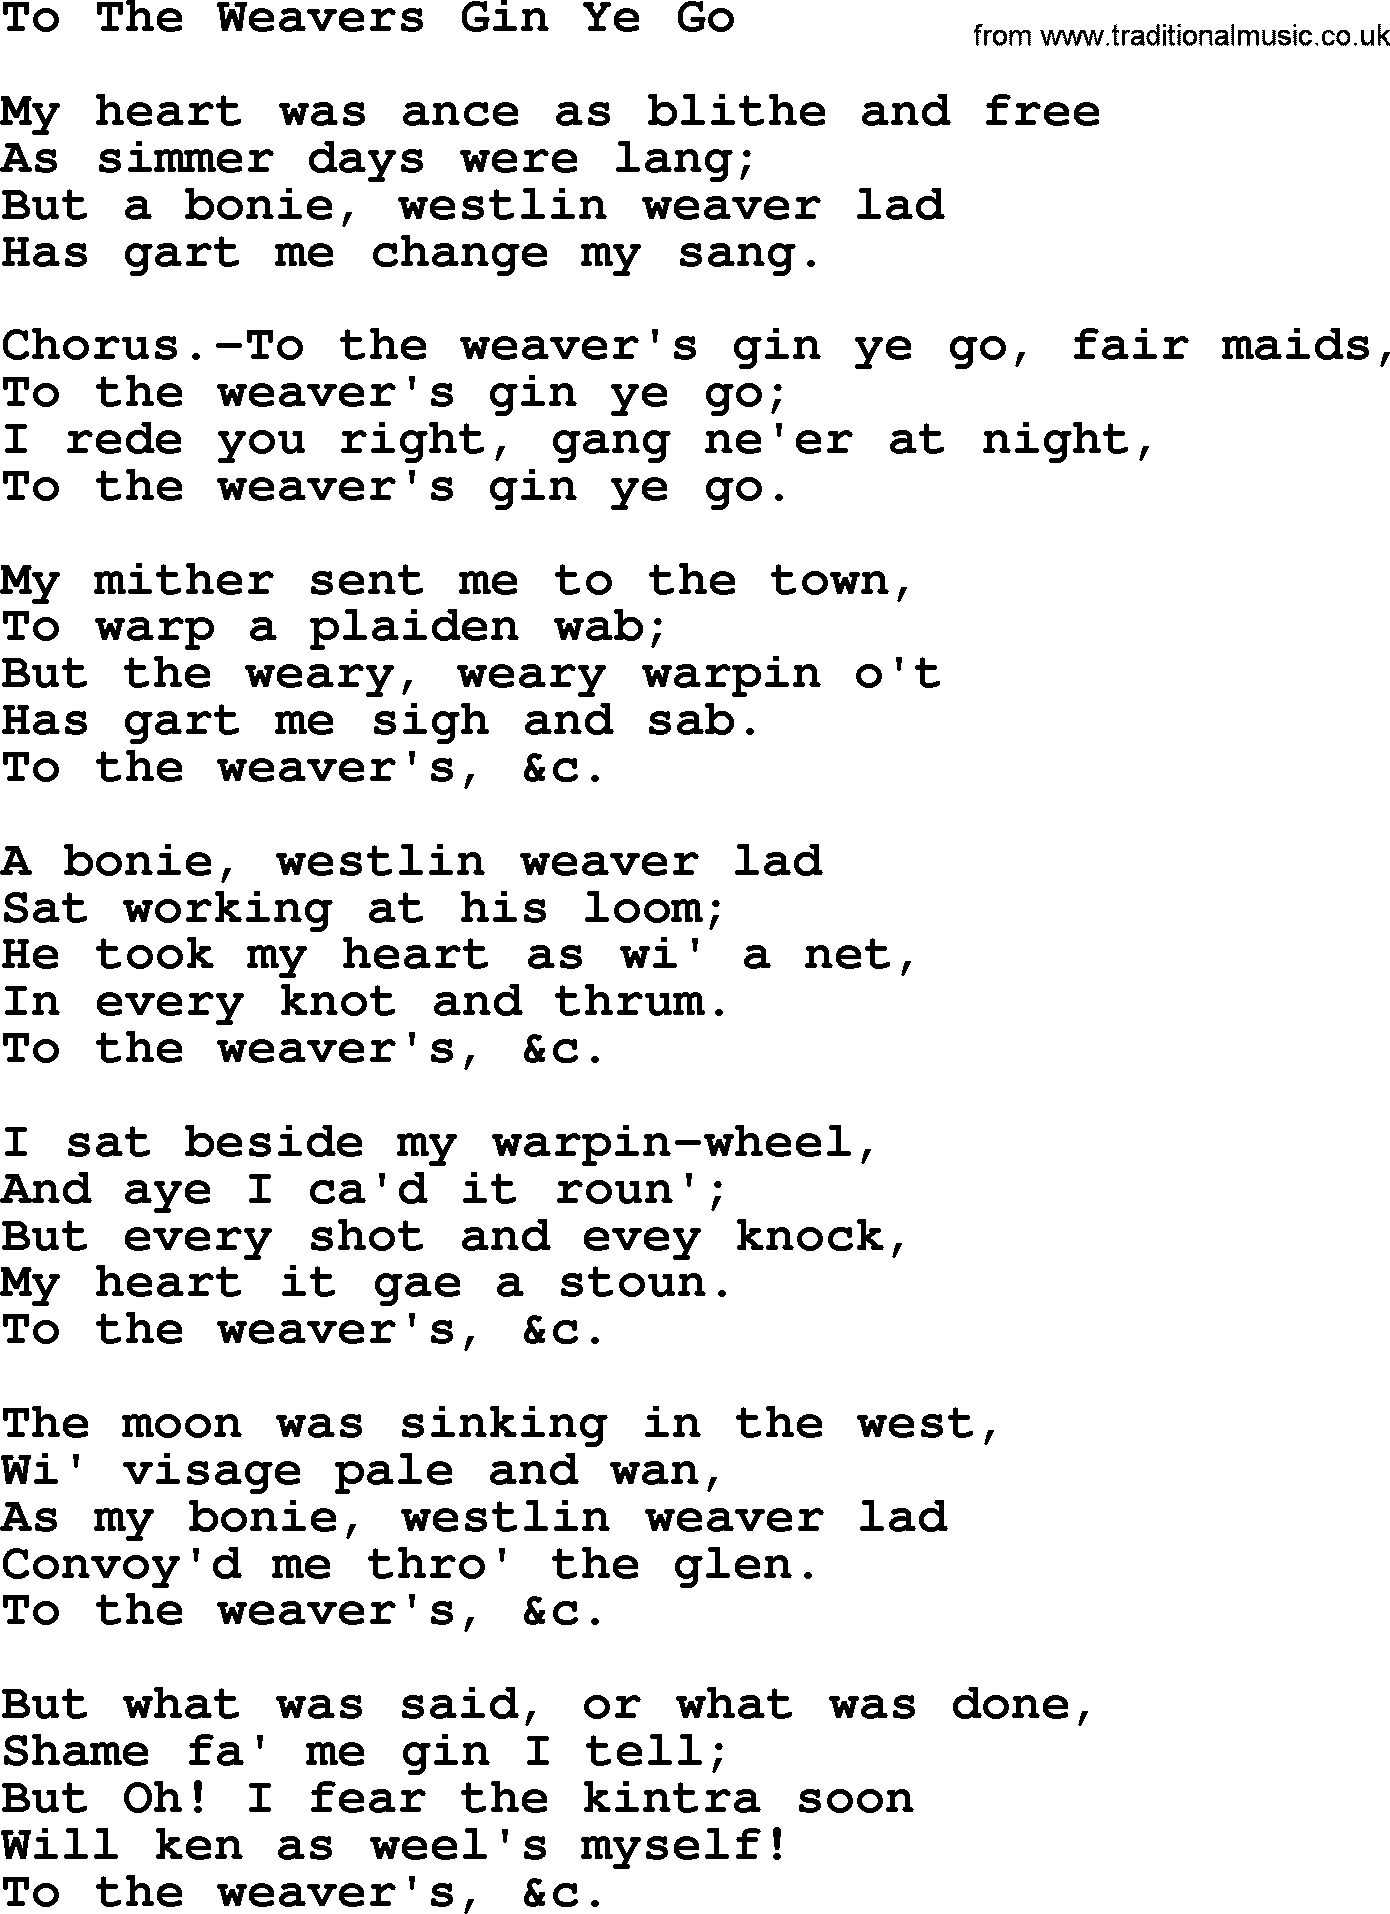 Robert Burns Songs & Lyrics: To The Weavers Gin Ye Go